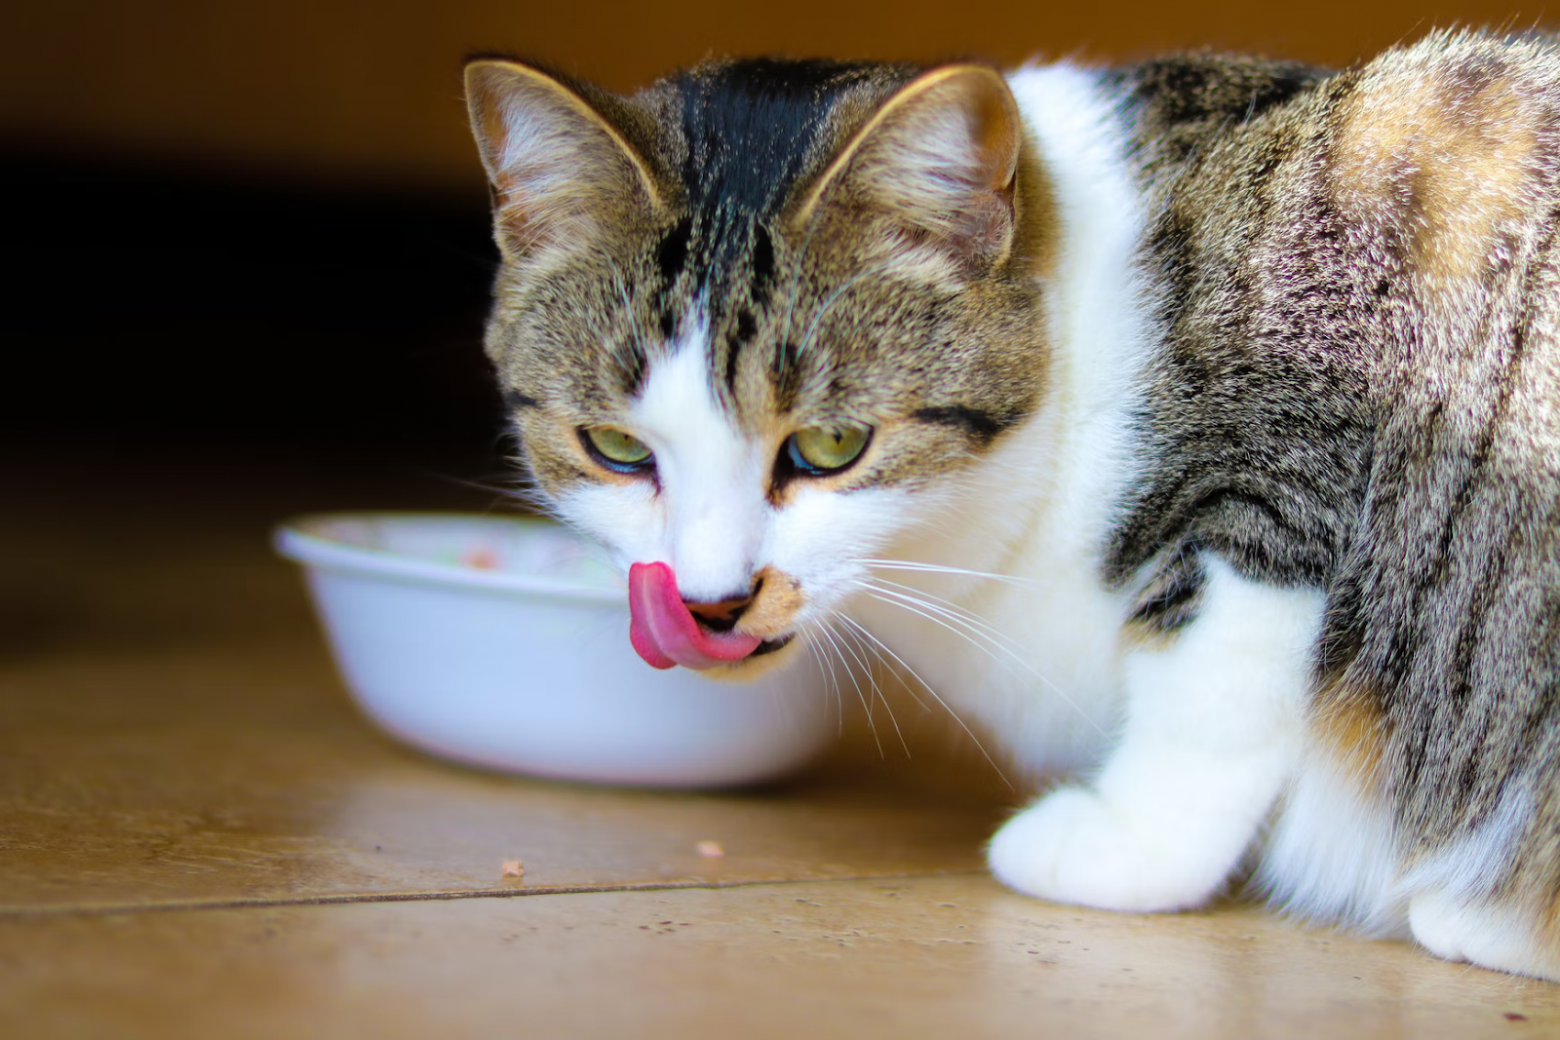 Разноцветный кот ест корм и облизывается (https://unsplash.com/photos/_FlMYRBExBk)